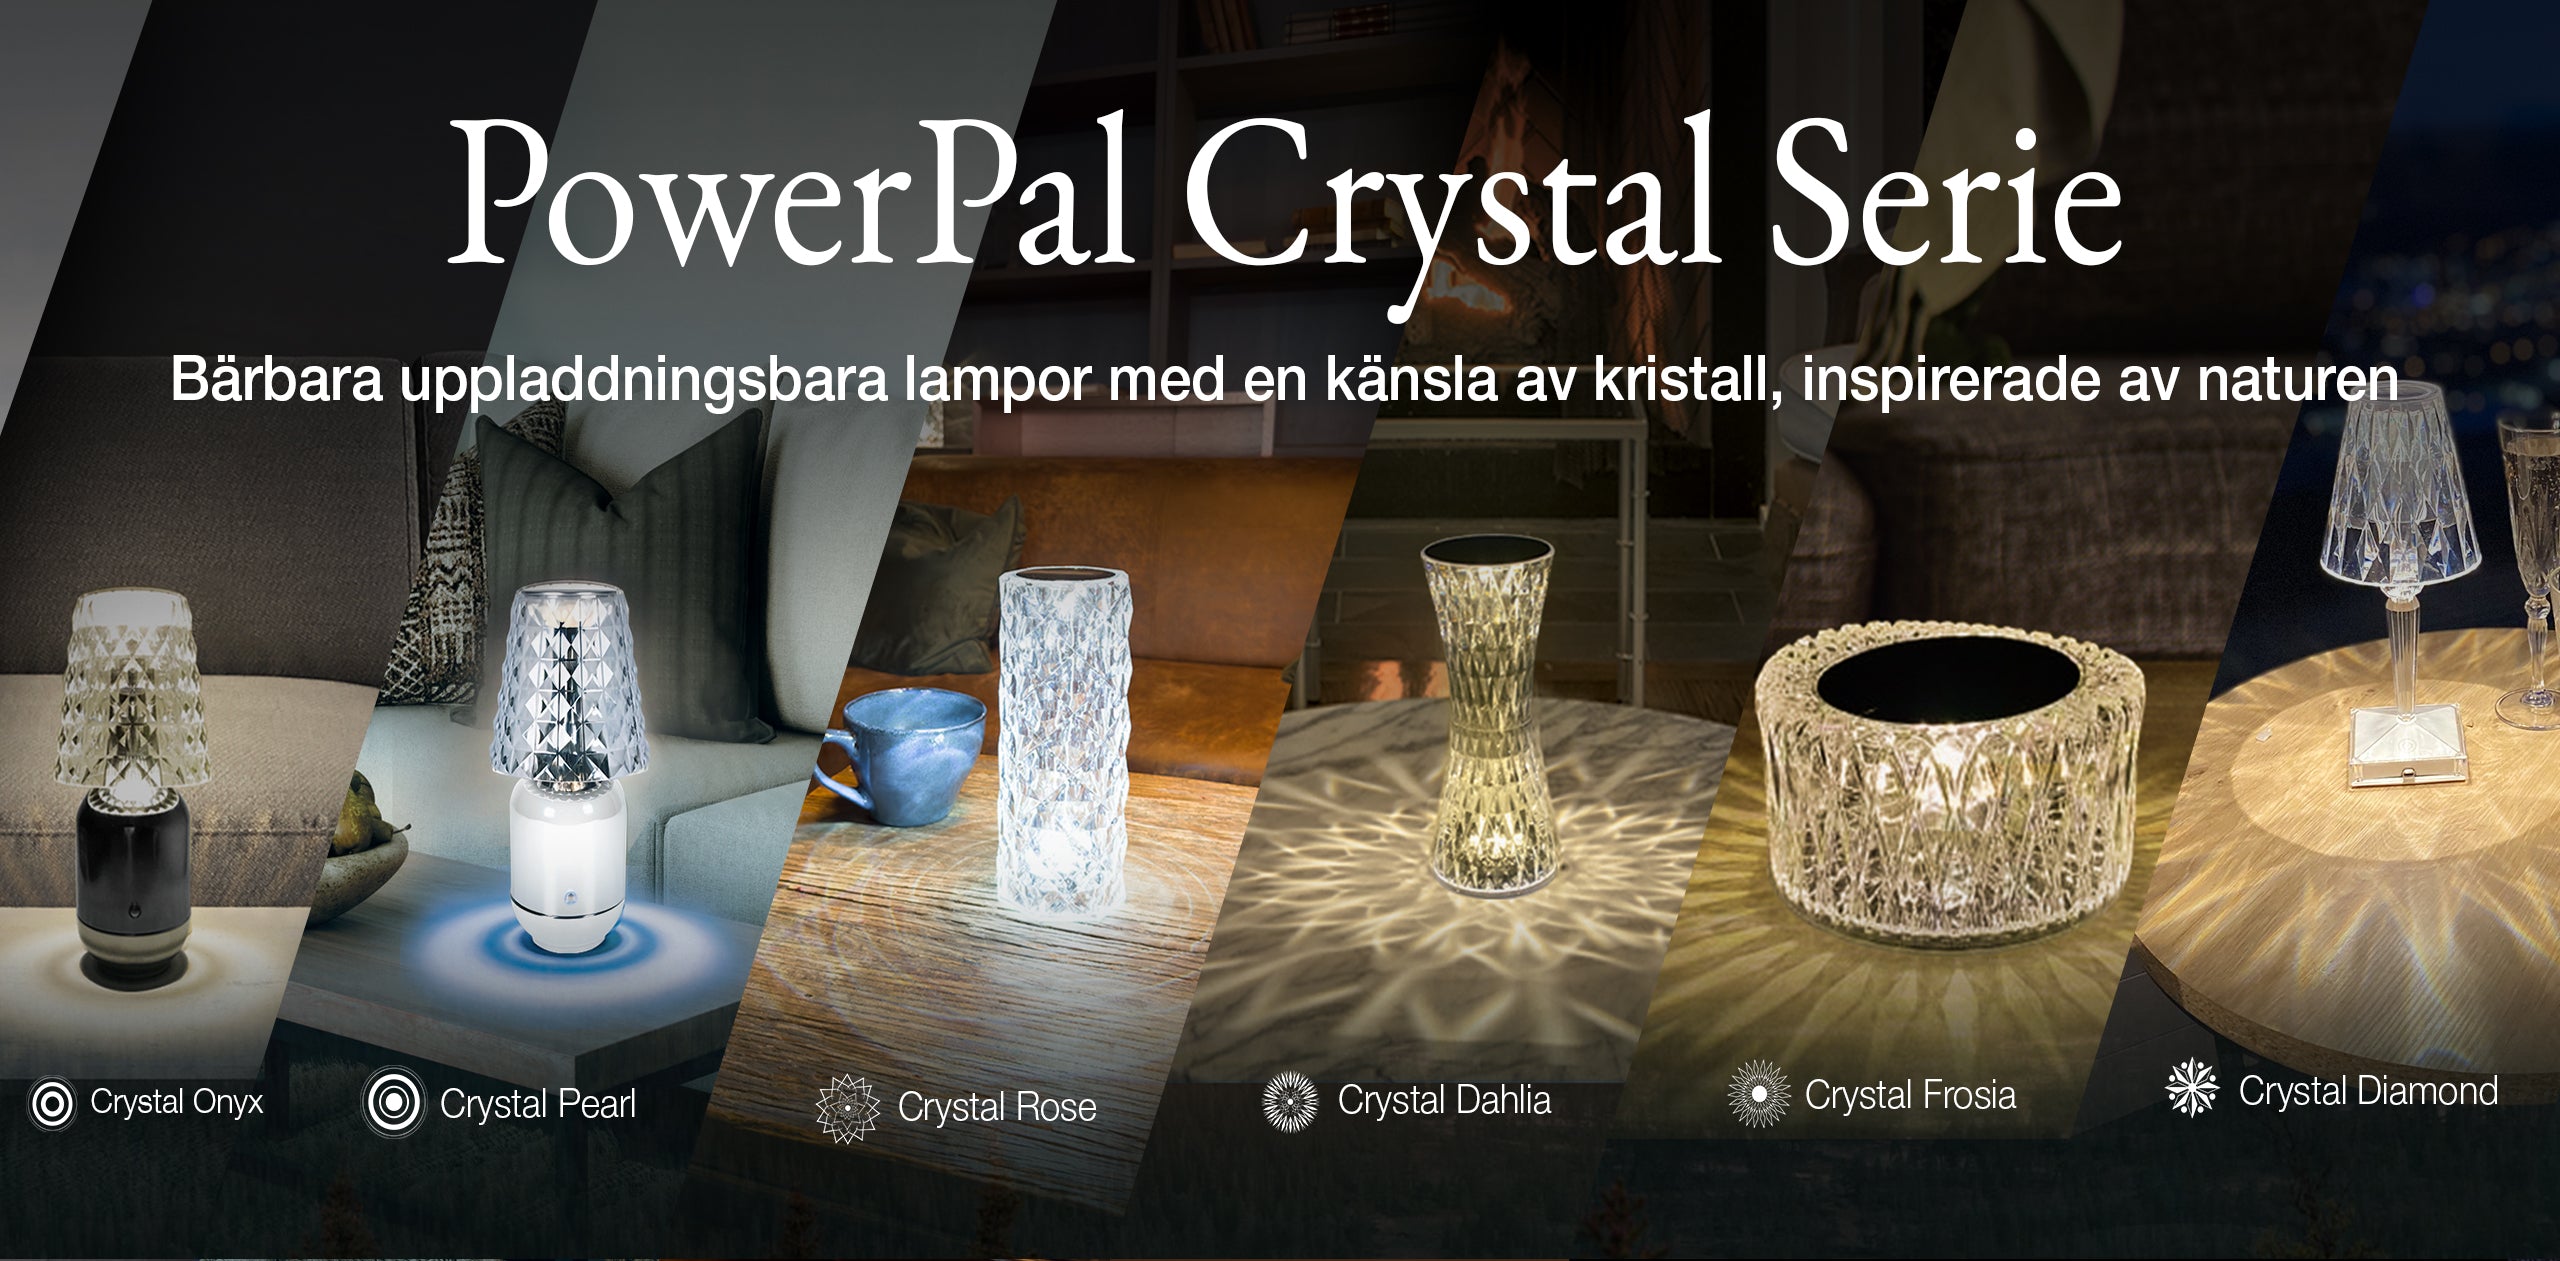 Känslan av kristall, till priset av en bärbar, uppladdningsbar lampa